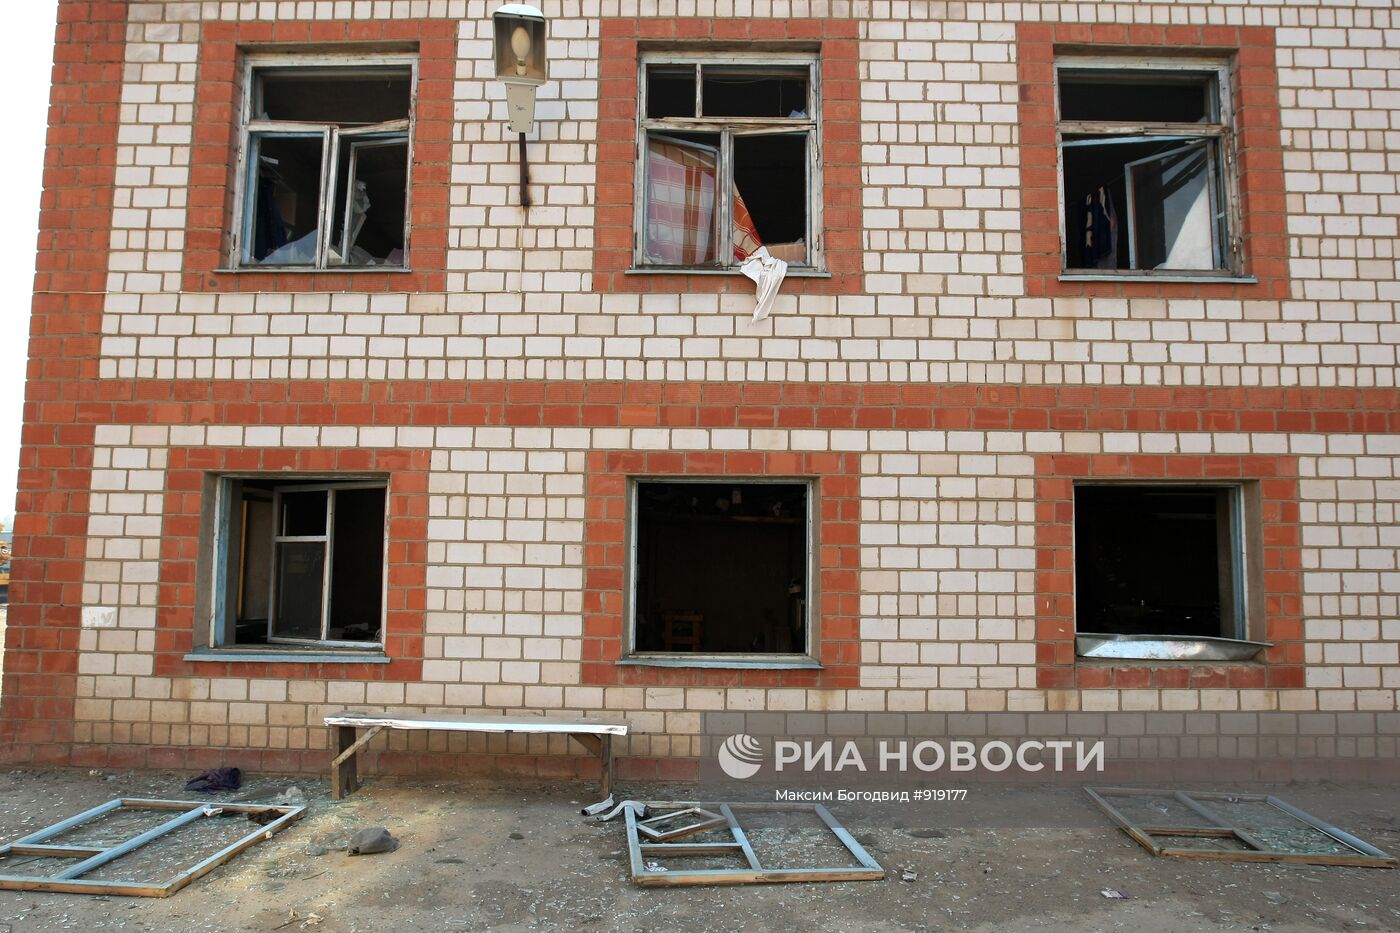 Выбитые взрывом стекла в окнах здания в поселке Постольском